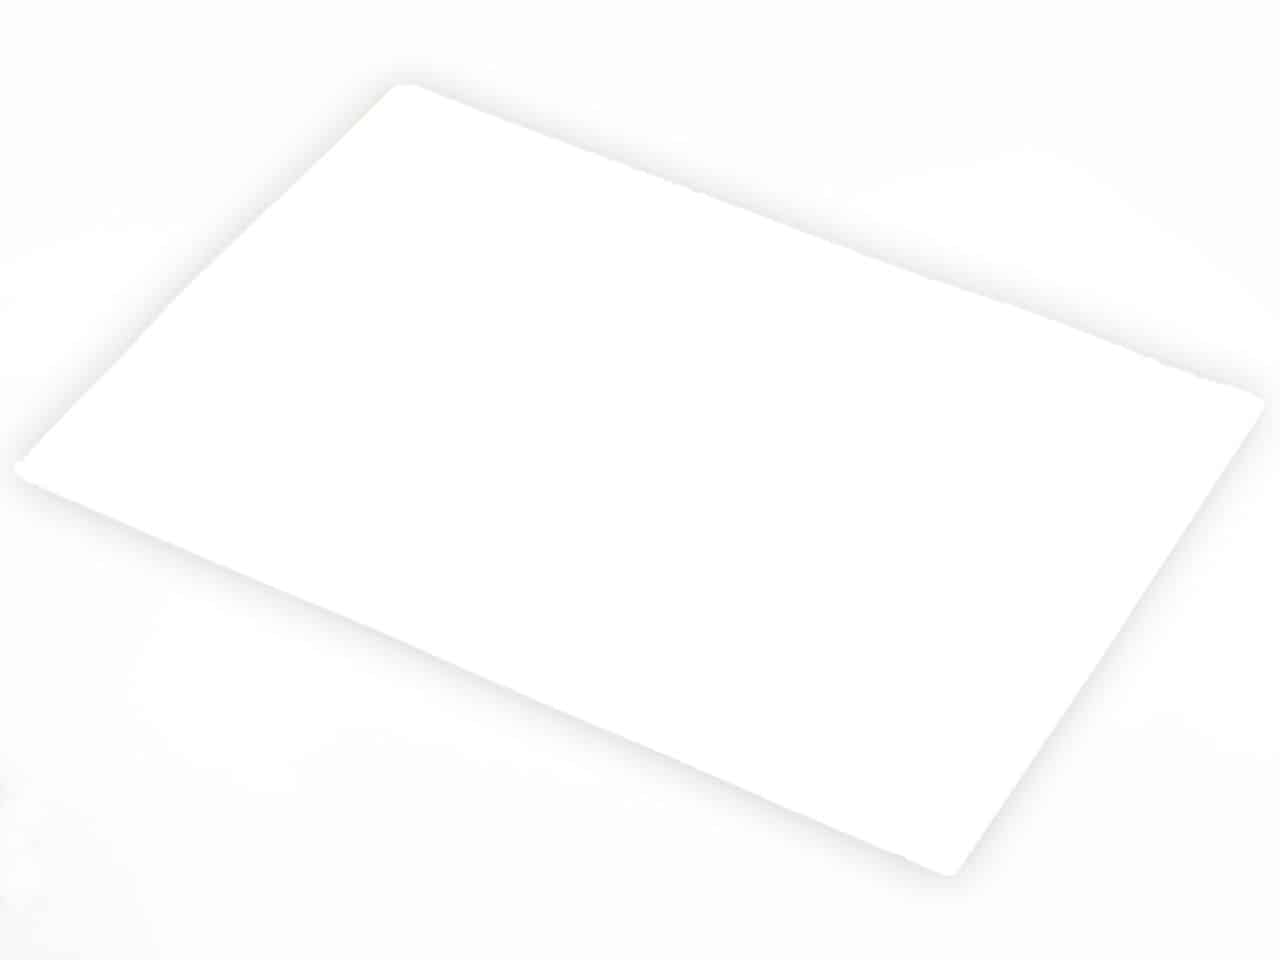 Wafer Paper AD-2 0,4mm A4 (20x30) 25 Stück V01